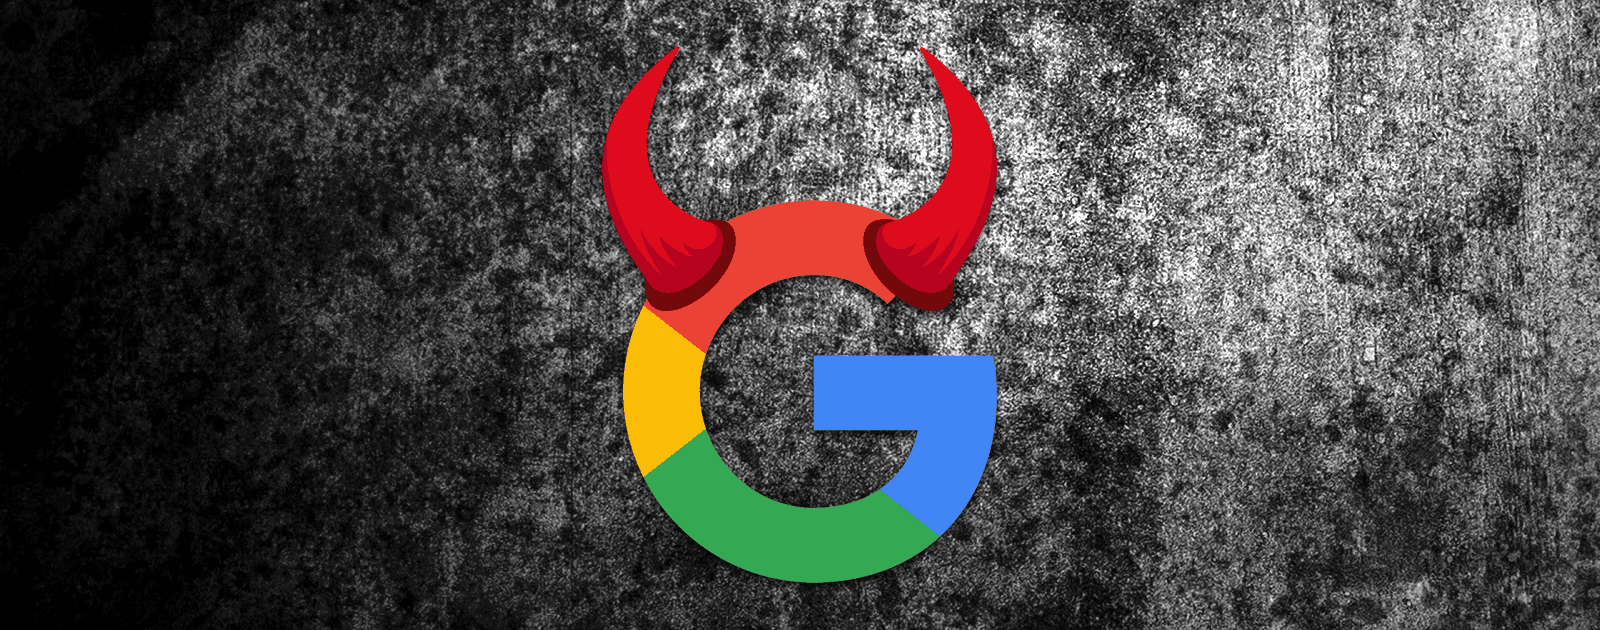 Европейская комиссия предлагает разбить Google на части